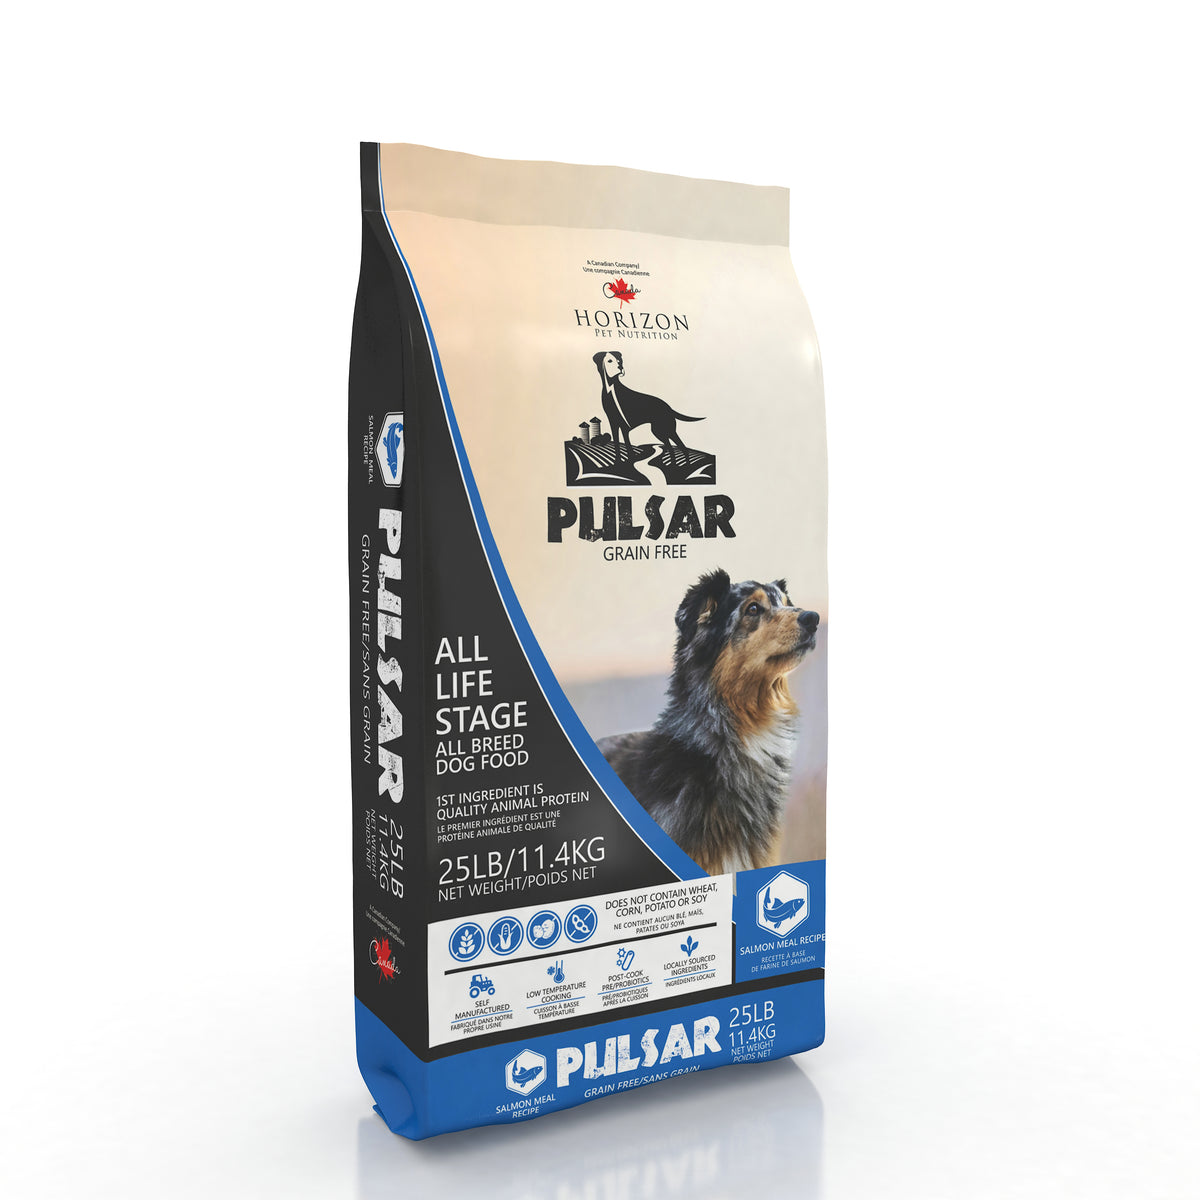 Horizon Pulsar Pulses and Fish Formula Grain Free Dog Food